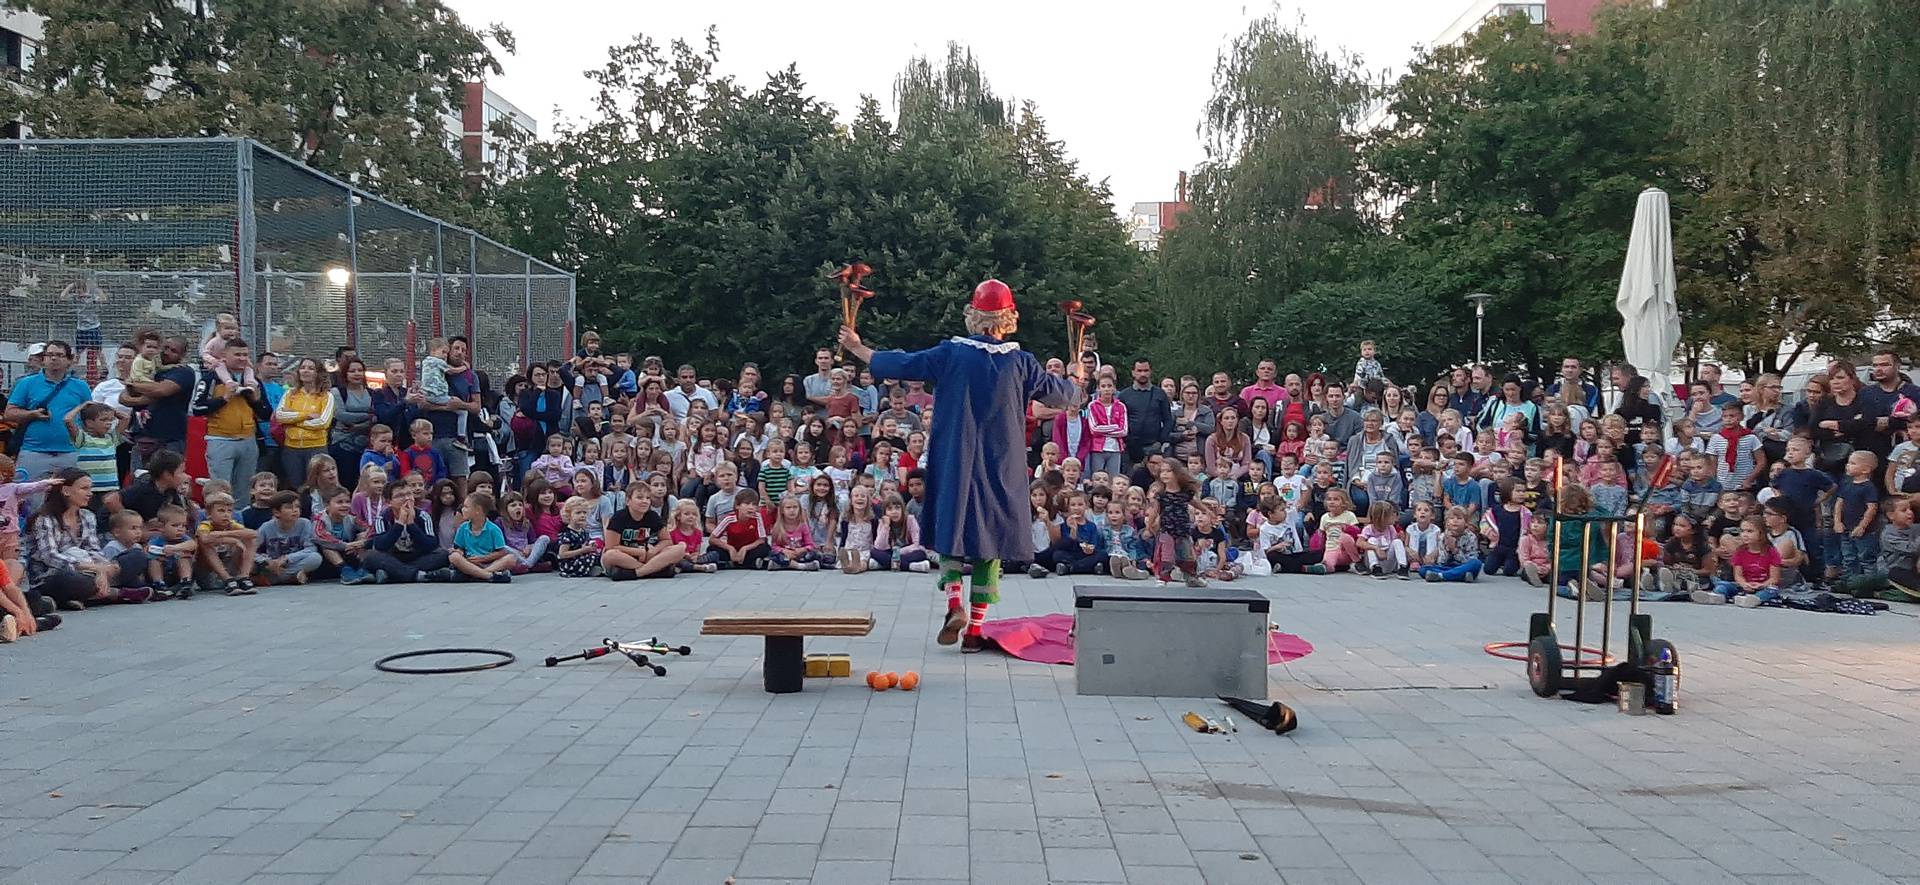 Dostava kulture pod balkon: U Zagrebu kreće ulični festival